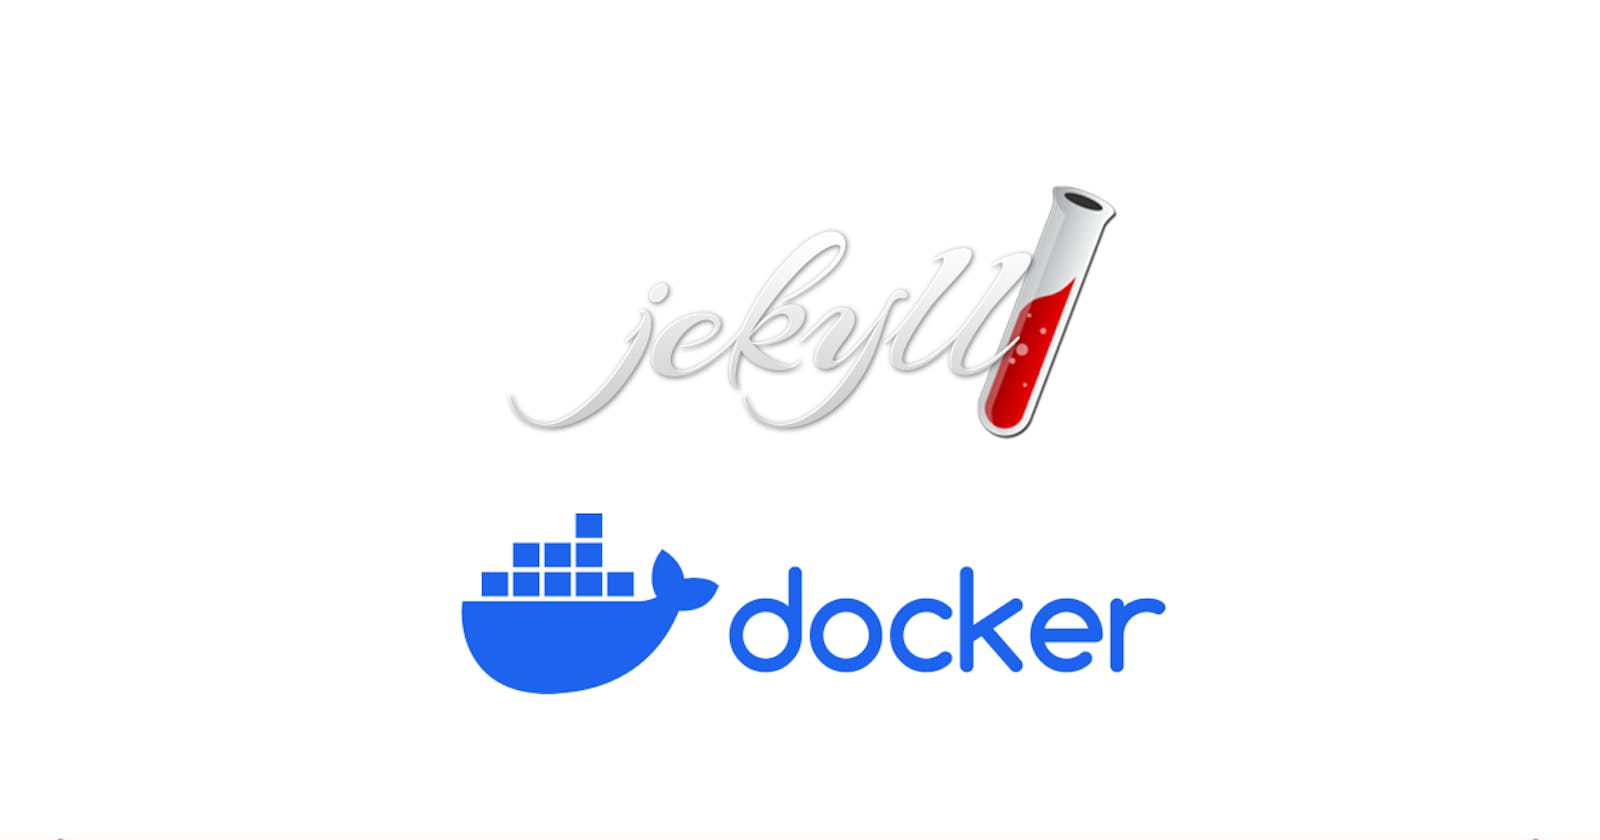 Jekyll Docker